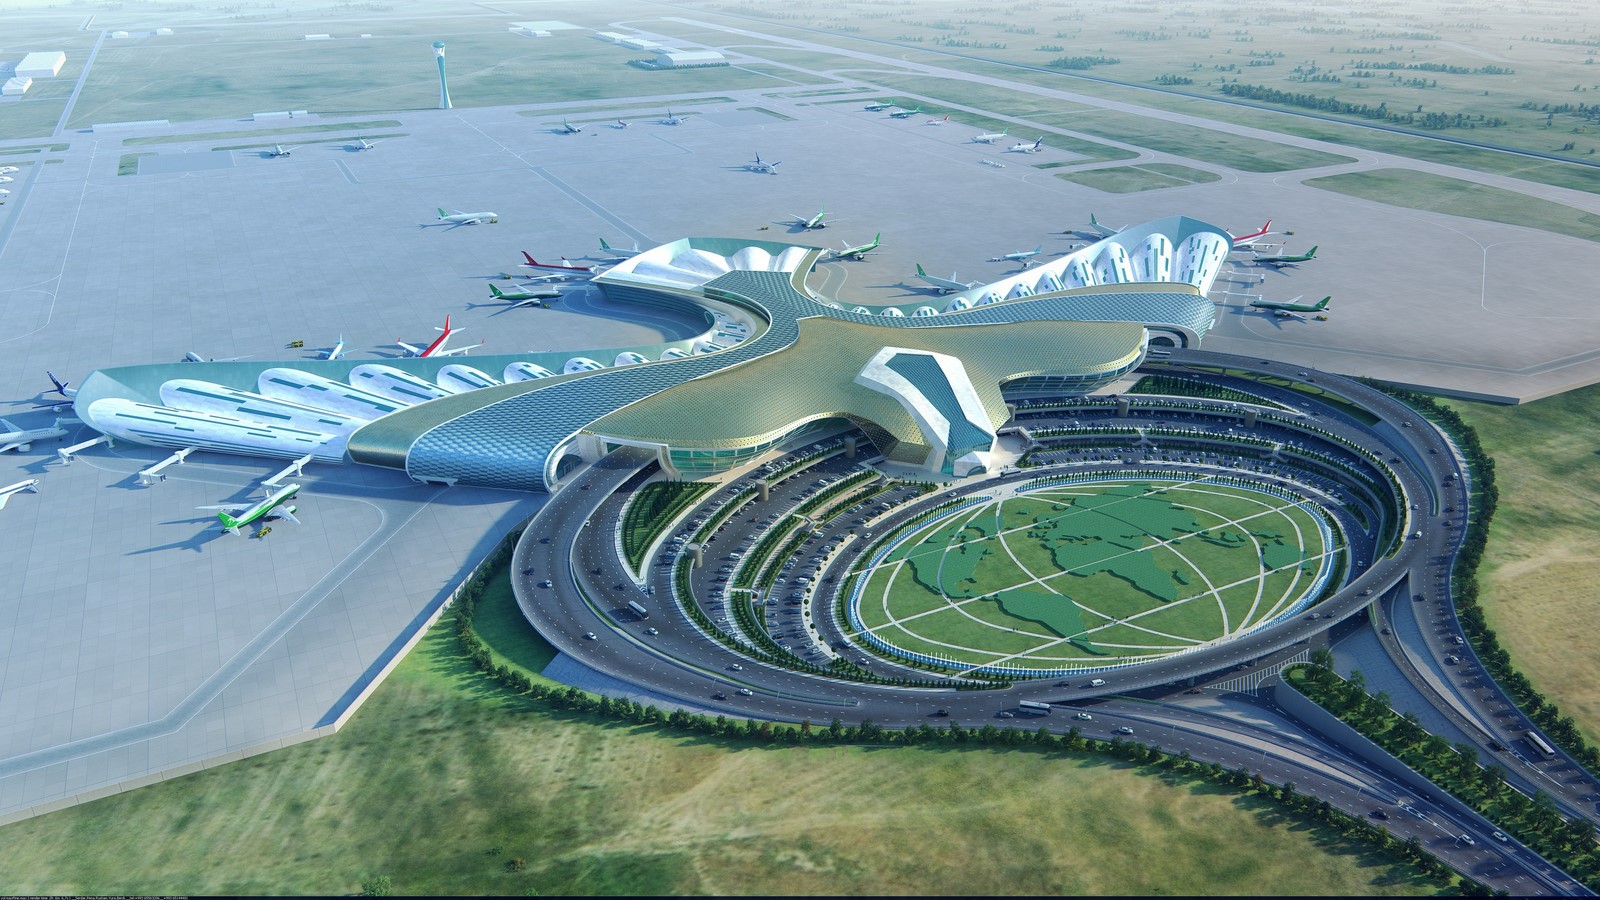 International future. Архитектура аэропорт Ашхабад Туркменистане. Ашхабад аэропорт архитектура. Ашхабад здание Международный аэропорт будущего. Аэропорт Инчхон.